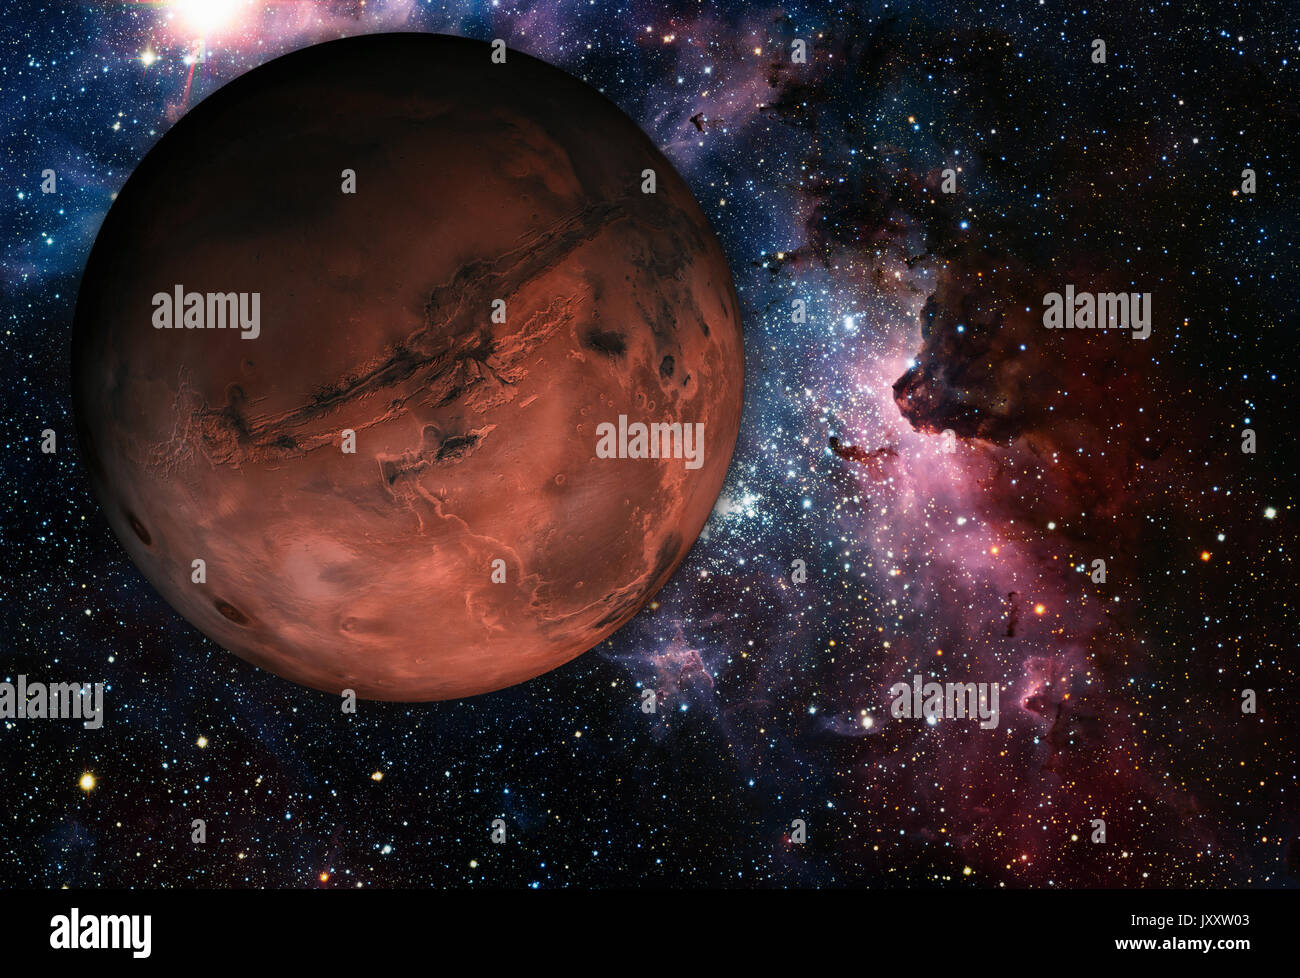 Sistema Solar - Marte. Es el cuarto planeta desde el Sol, Marte es un planeta terrestre con una delgada atmósfera, con cráteres, volcanes, valles, de Foto de stock